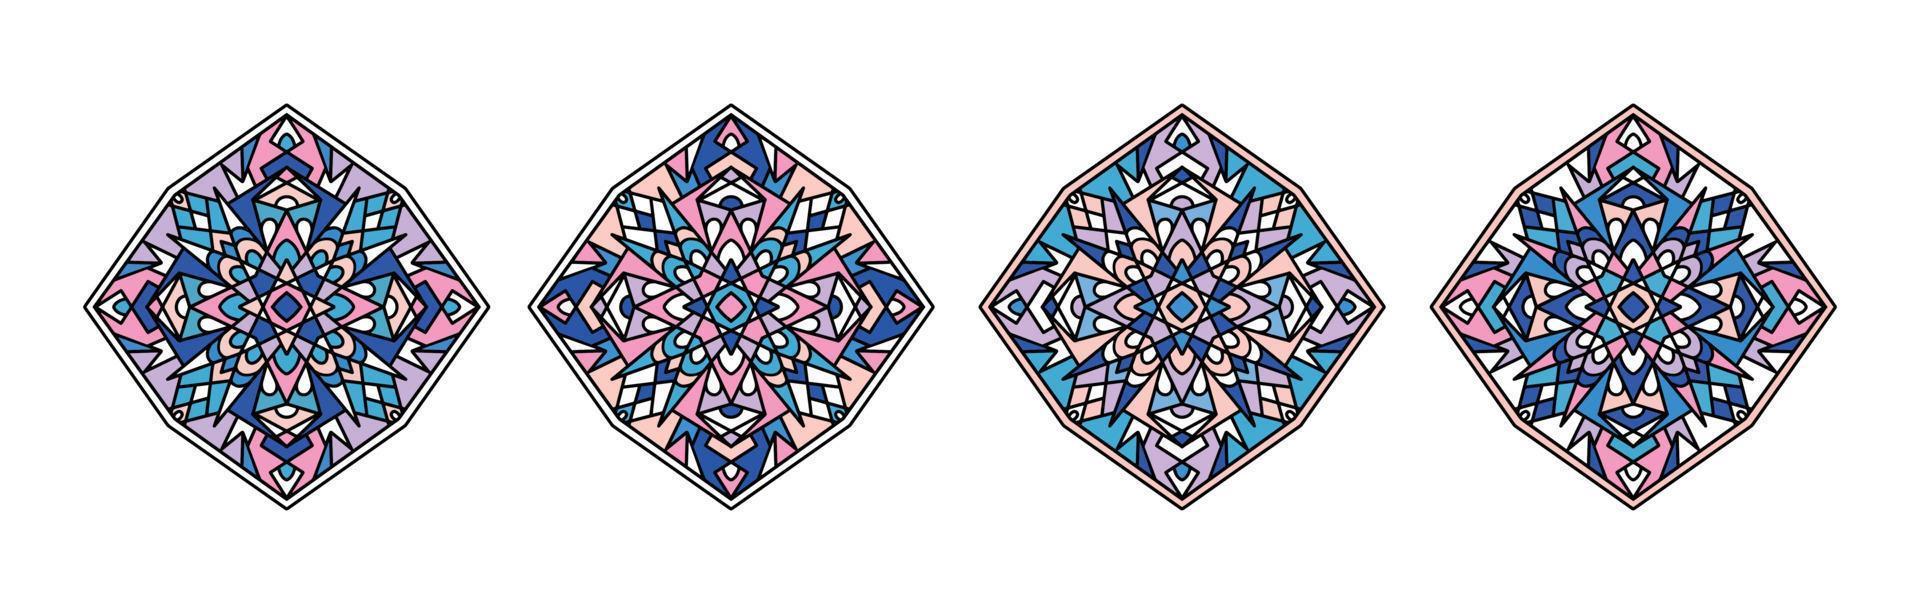 Mandalas. rundes Ornamentmuster. Vintage dekorative Elemente. handgezeichneter Hintergrund. islamische, arabische, indische, osmanische Motive. vektor